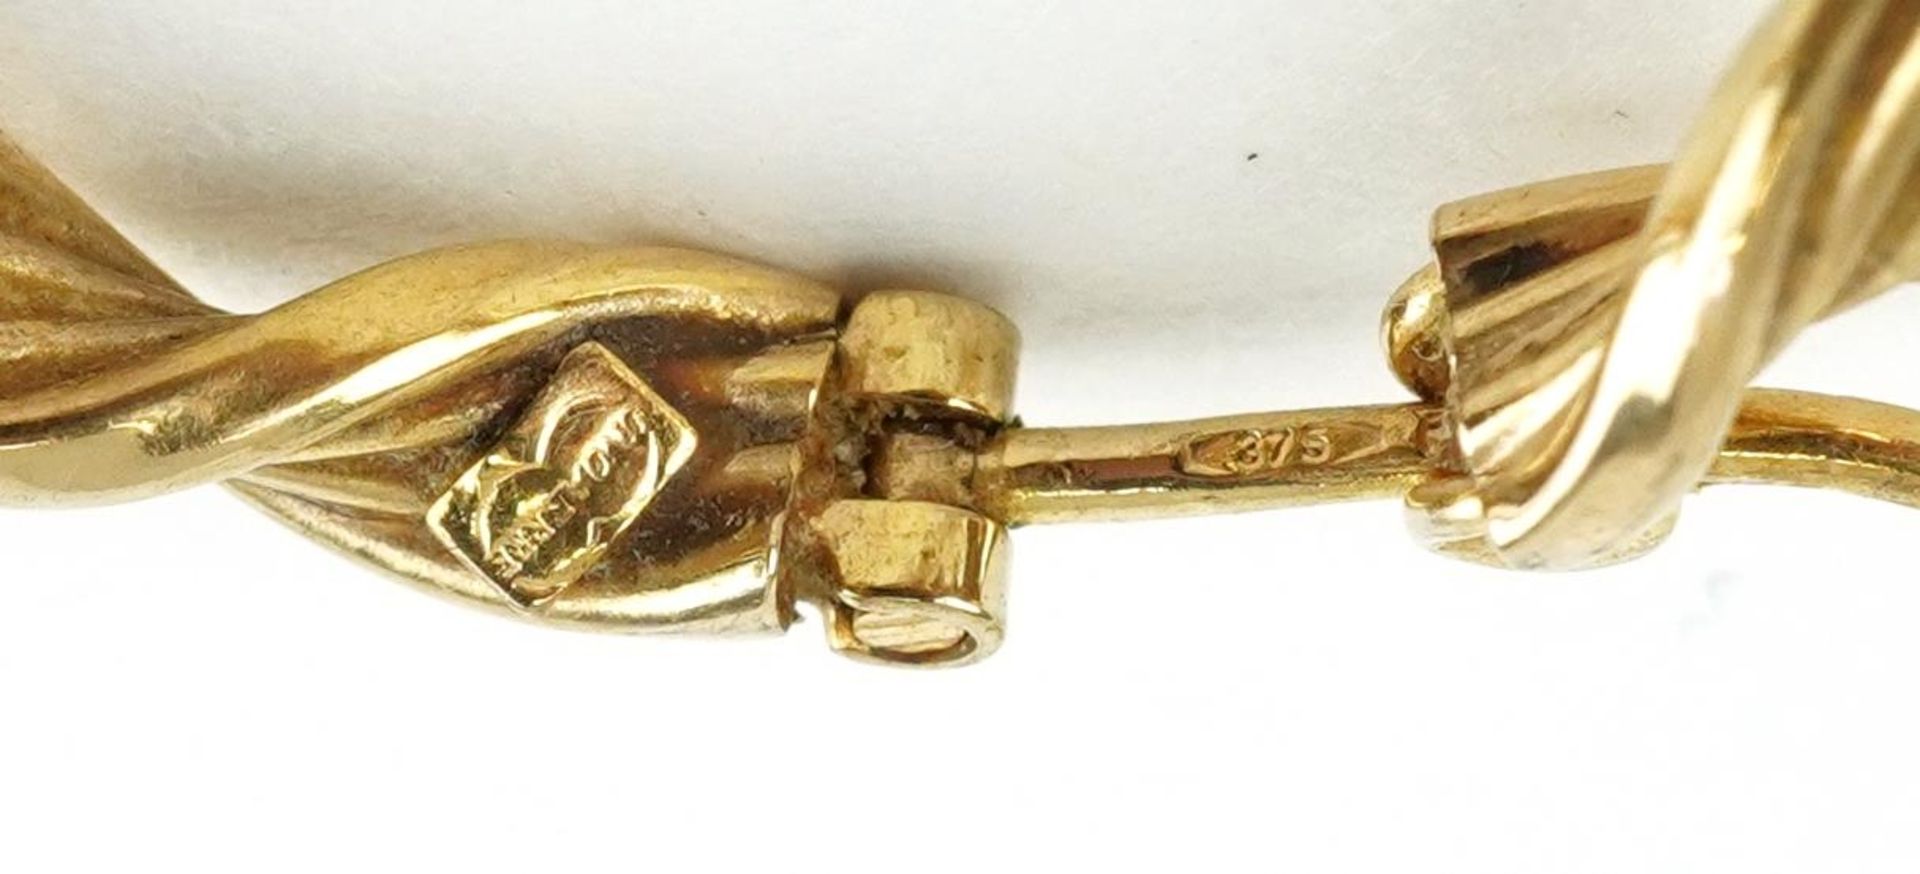 UnoArre, pair of Italian 9ct gold hoop earrings, 2.6cm in diameter, total 2.2g - Image 3 of 3